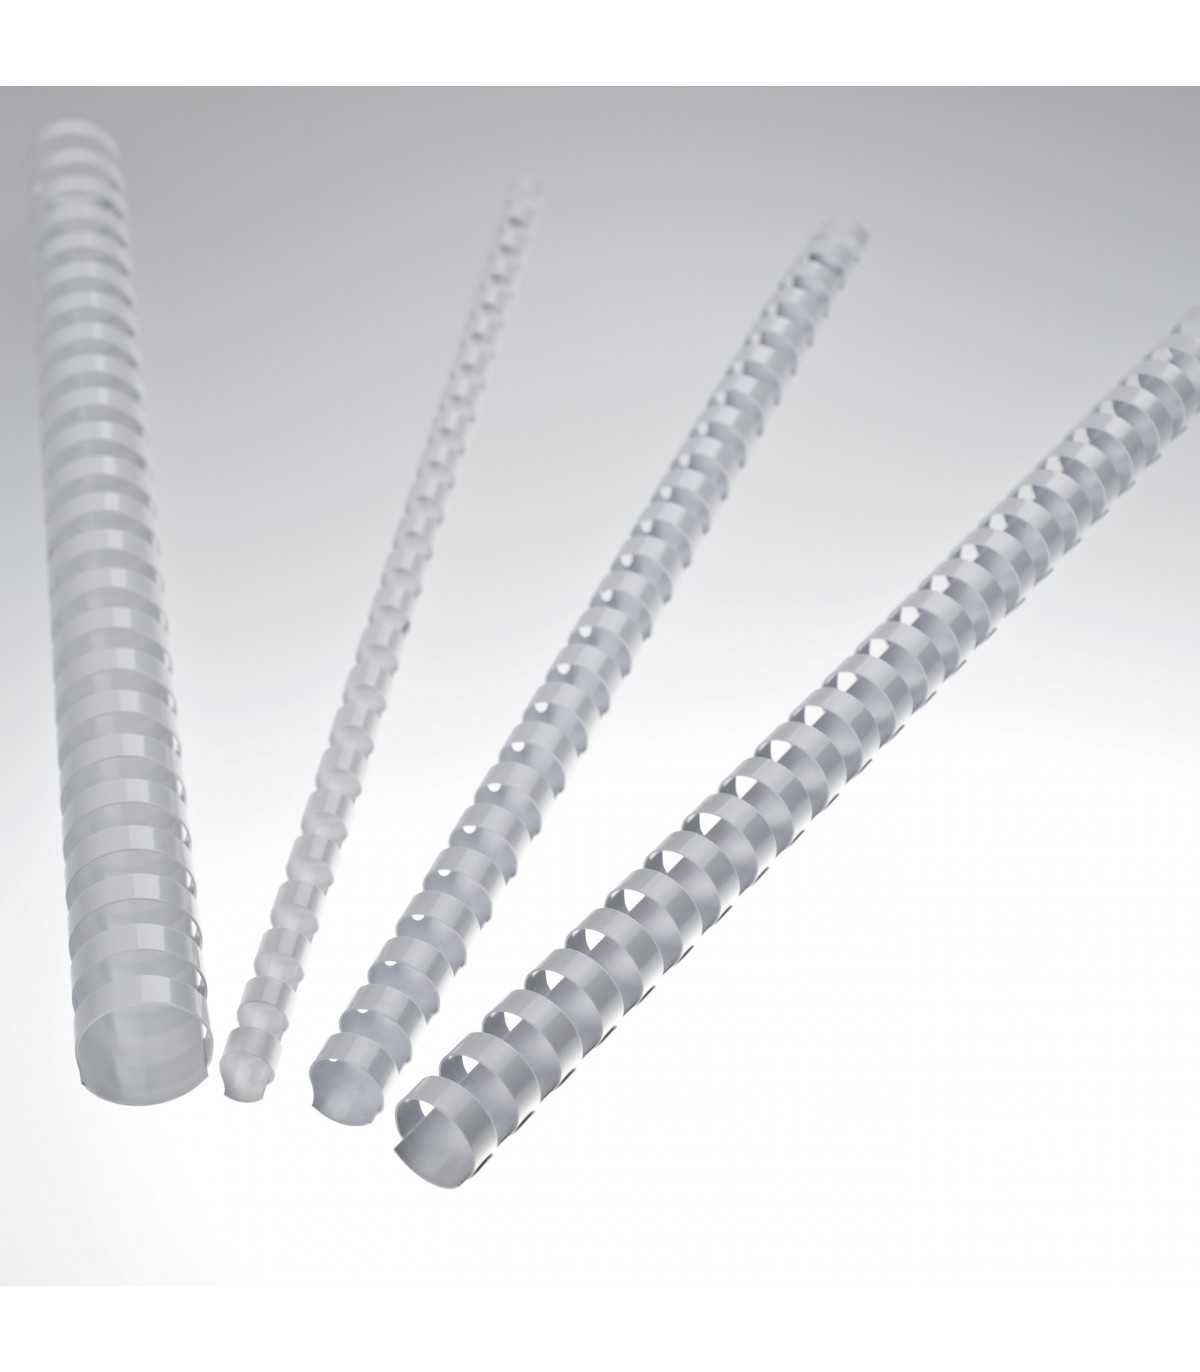 Dorsi plastici per rilegatura a 21 anelli - colore bianco - Immagine Srl